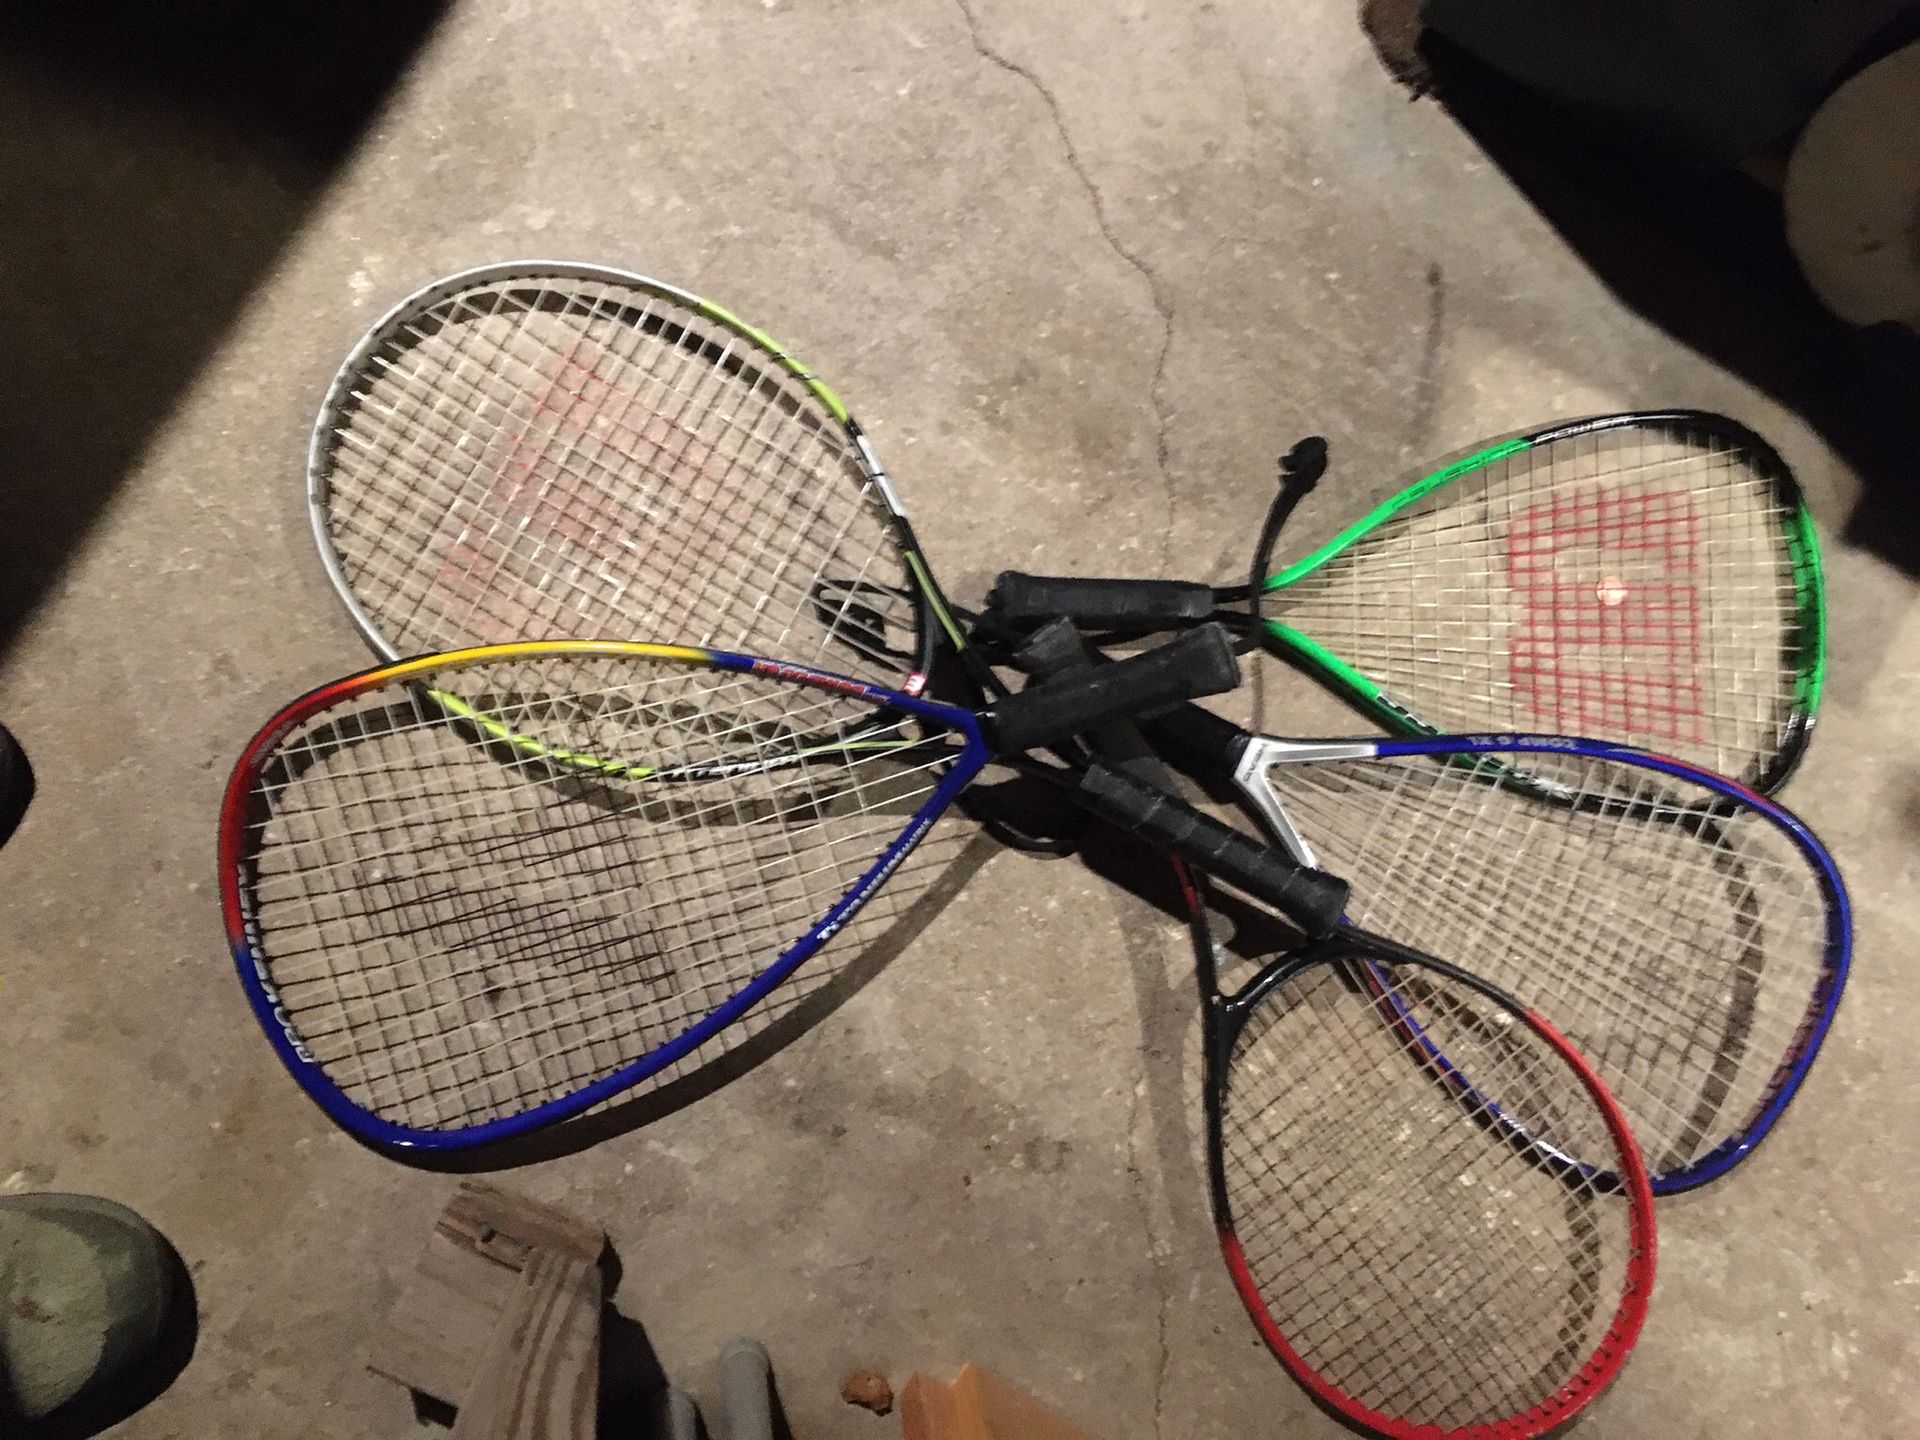 Tennis/Racket ball rackets